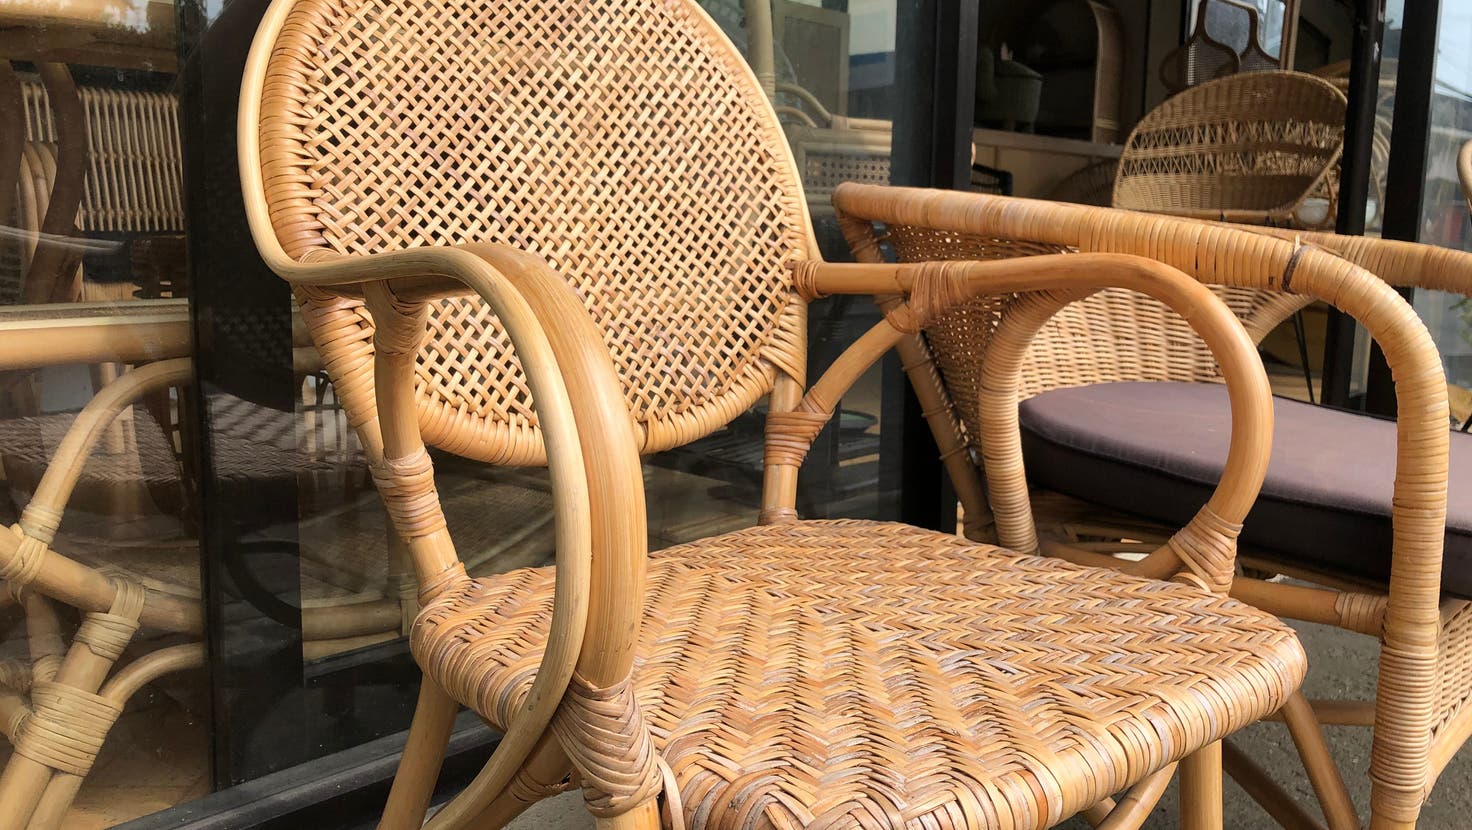 Der Stuhl war aus Rattangeflecht gefertigt. (Bild: Getty)